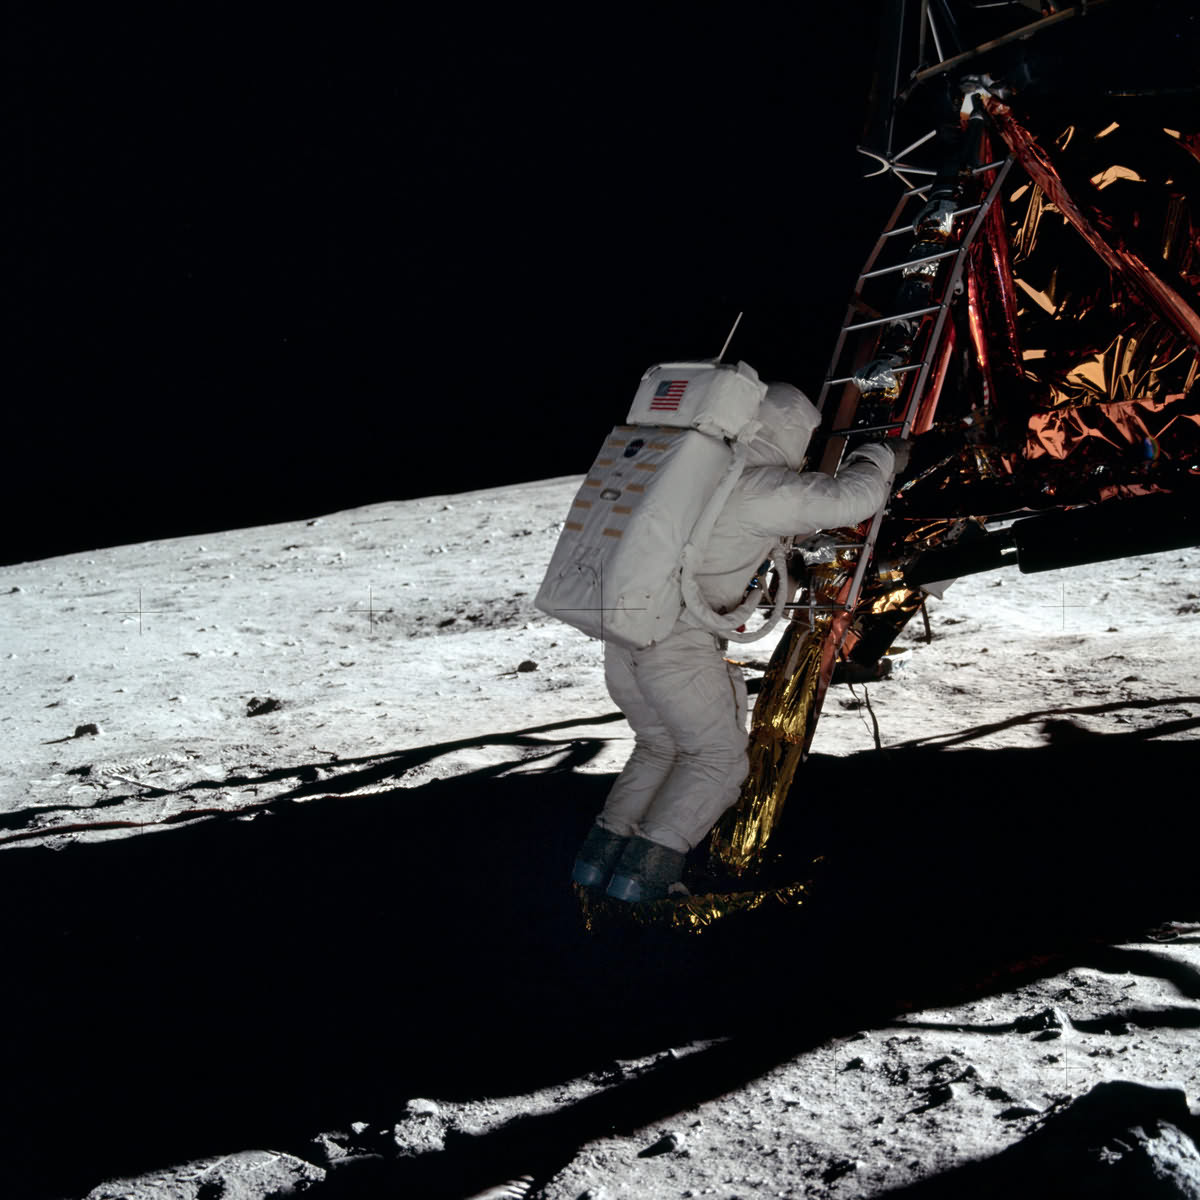 Базз Олдрин вторым из людей вступает на поверхность Луны